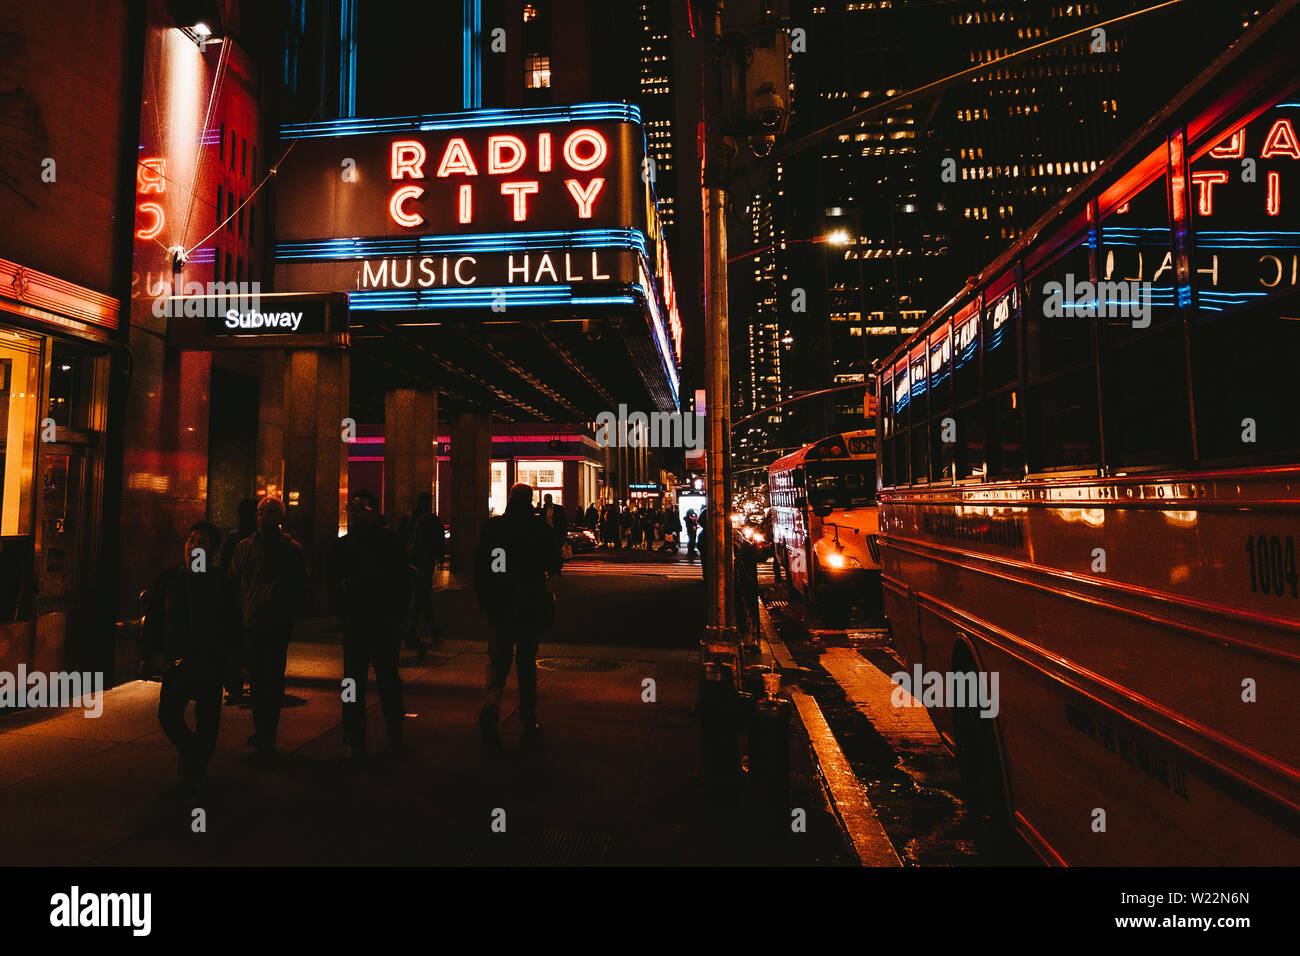 Die Radio City Music Hall: Nacht schießen von Passanten und die Neon Nächte der Radio City Music Hall in New York - April 2019, New York, NY, USA Stockfoto